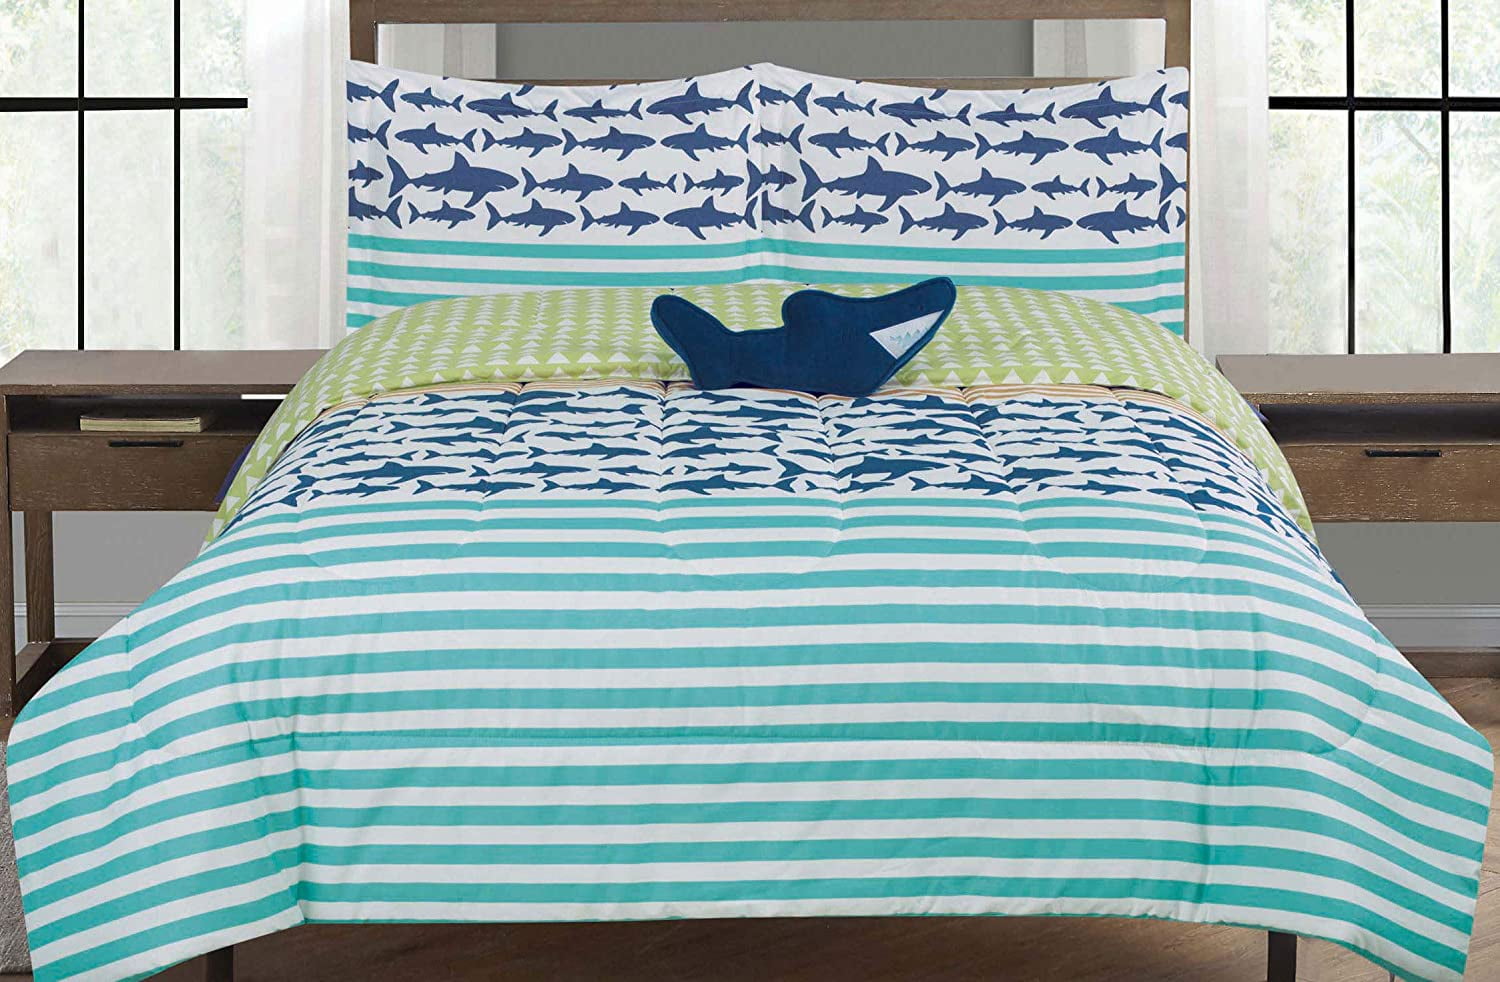 BOAT HOUSE KIDS 4pc White Blue Green Sharks Sheet Set Full 